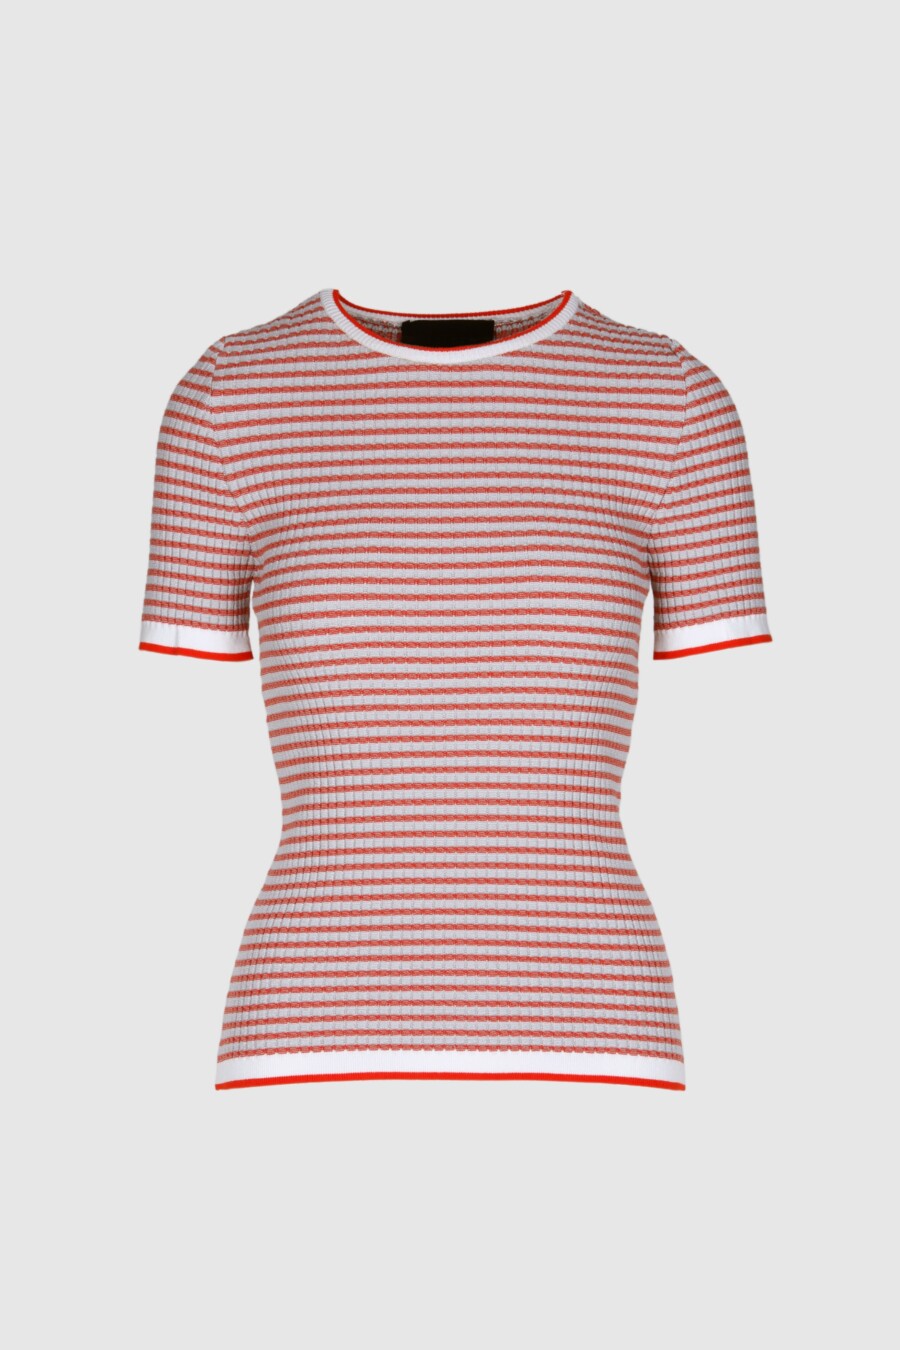 Shirt, T-Shirt, gestrickt, schwarz, weiß, rot, lila, Kurzarm, Ringelshirt, Baumwolle, elastisch